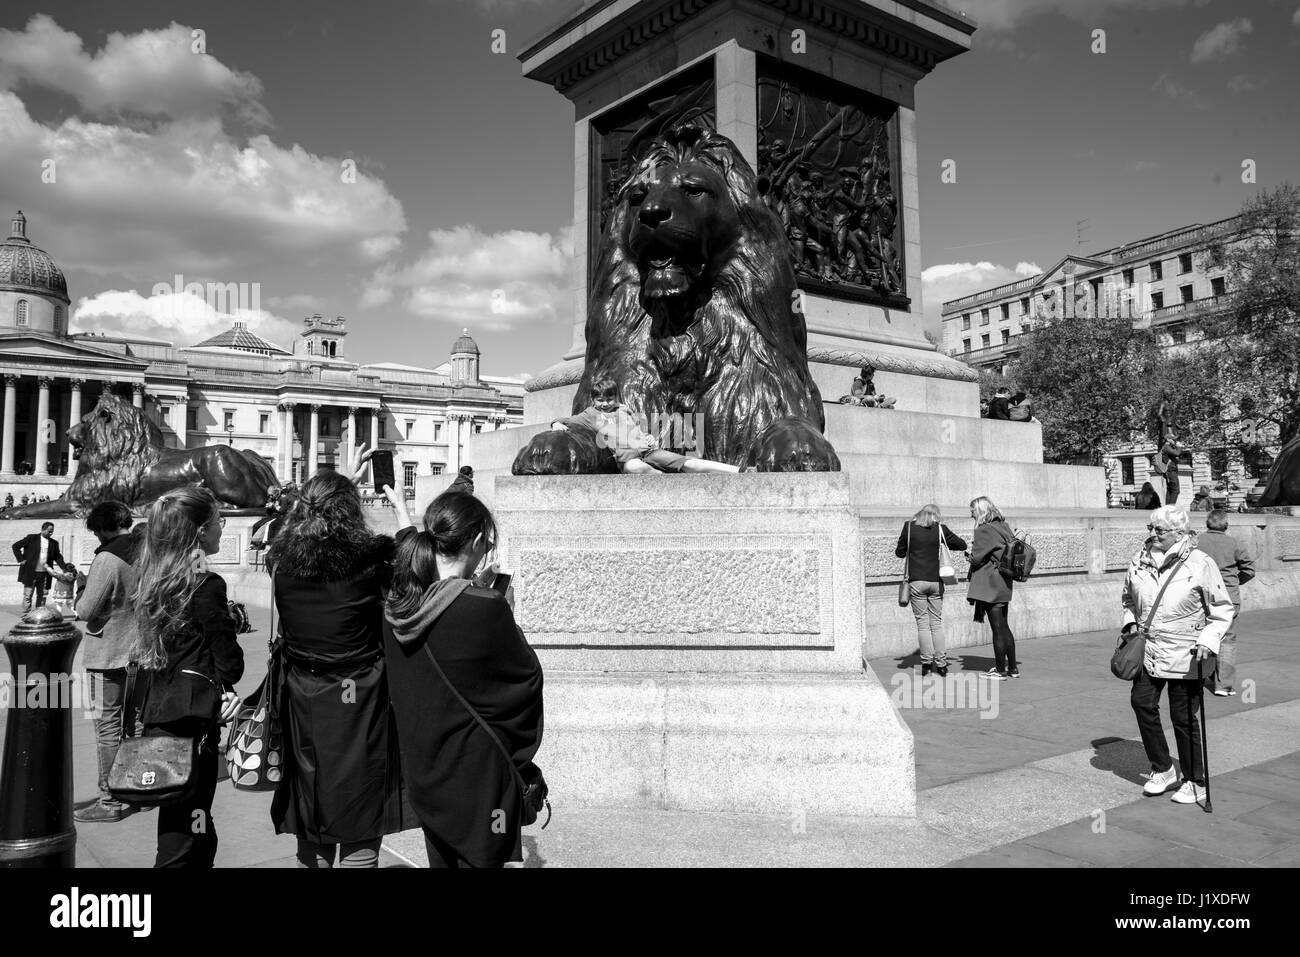 Un jour de printemps à Trafalgar Square, Londres, Angleterre, Royaume-Uni Banque D'Images